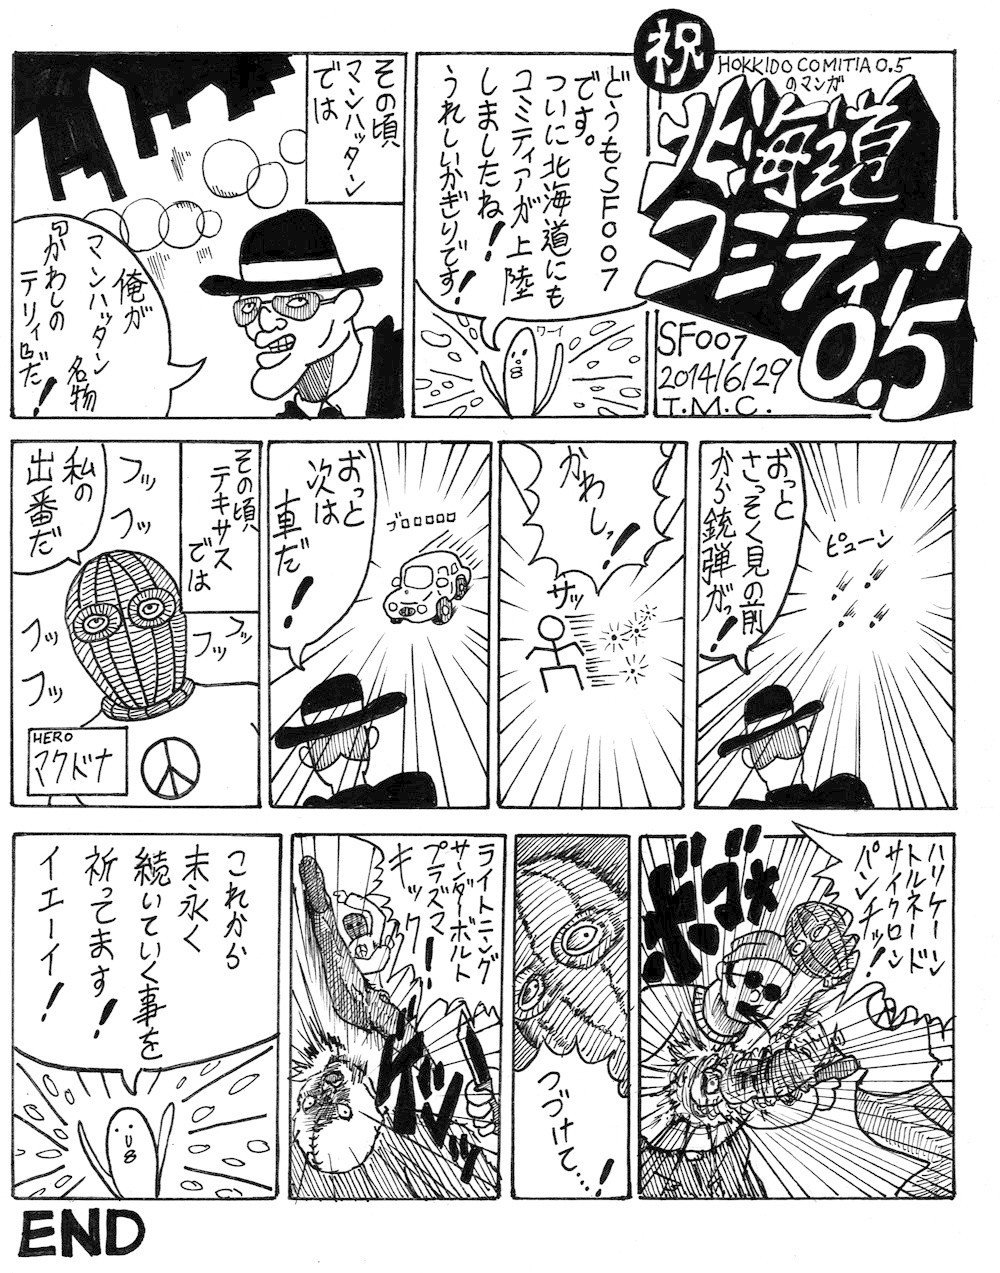 北海道コミティア0.5の漫画